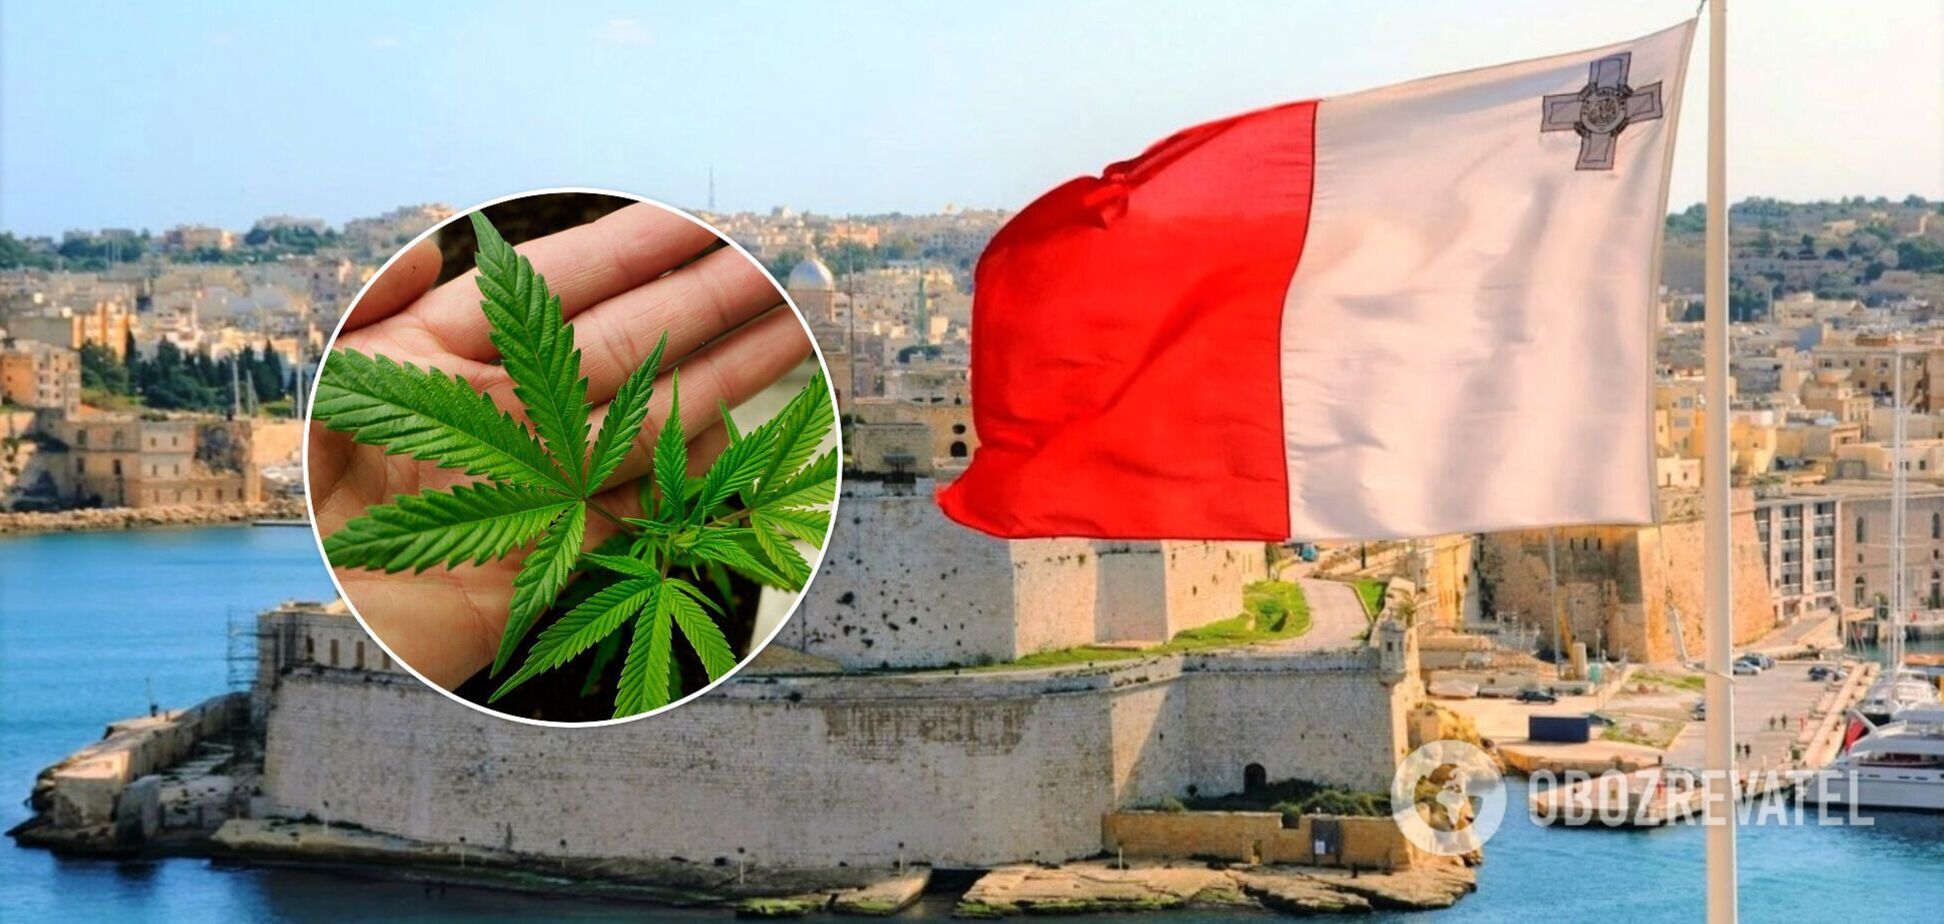 Мальта першою в ЄС легалізувала канабіс для особистого користування